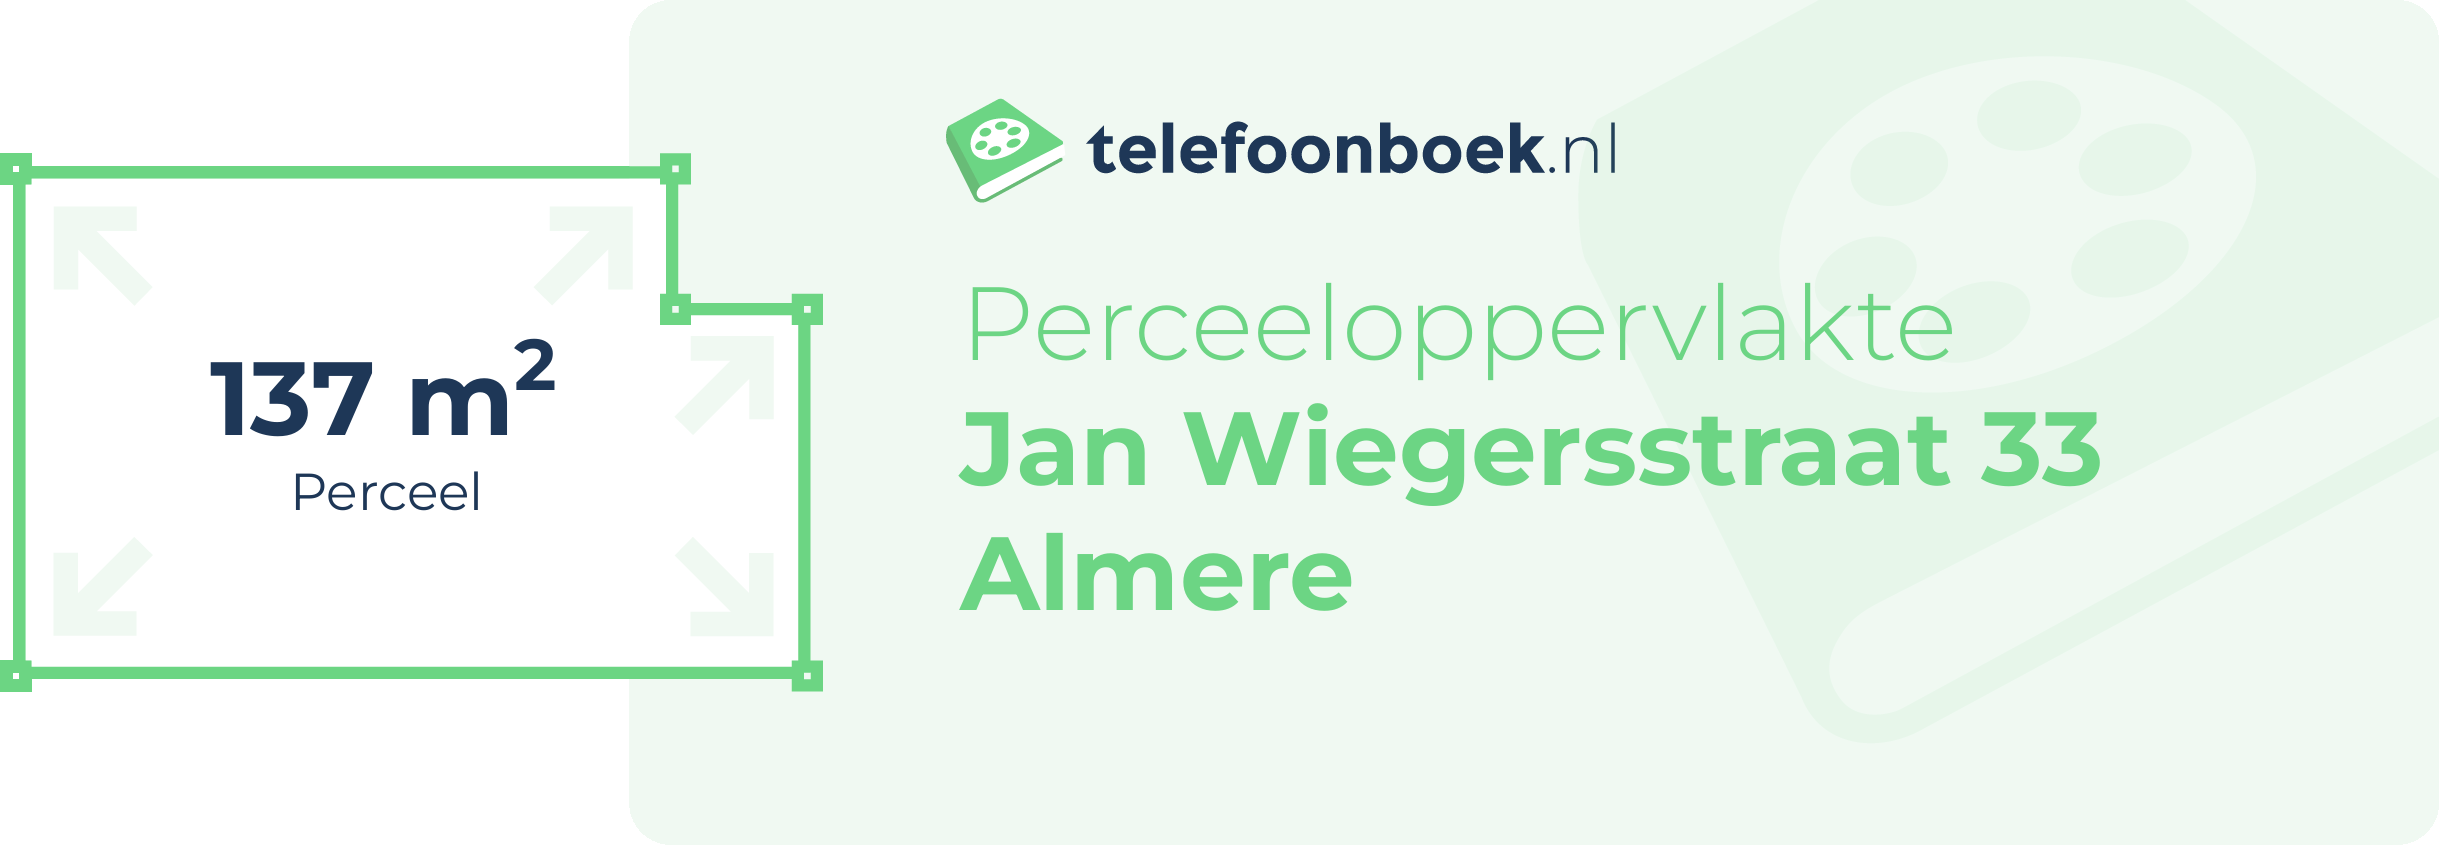 Perceeloppervlakte Jan Wiegersstraat 33 Almere